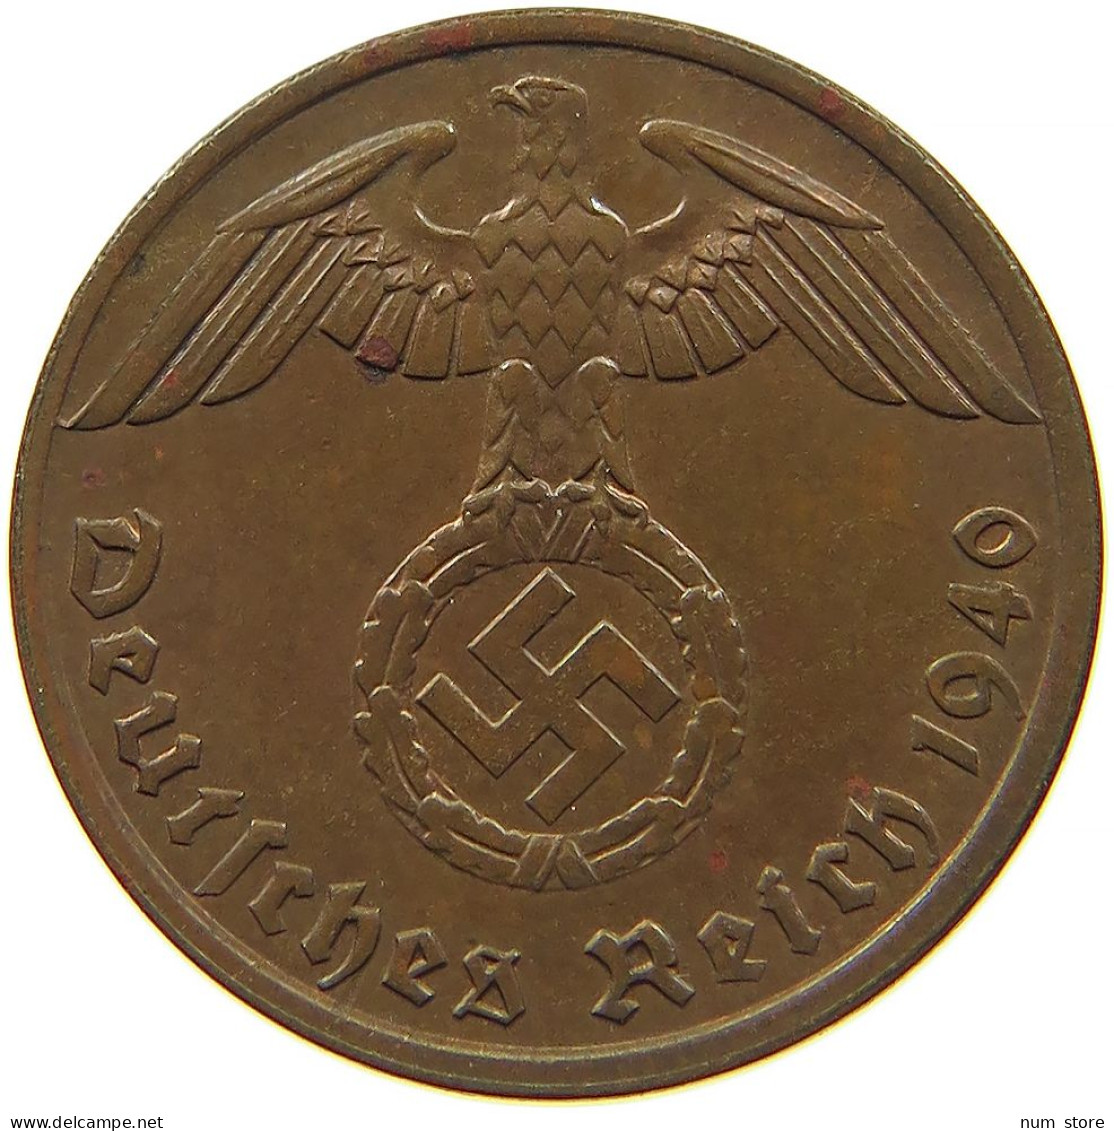 GERMANY 1 REICHSPFENNIG 1940 A OFF-CENTER #s083 0747 - 1 Reichspfennig